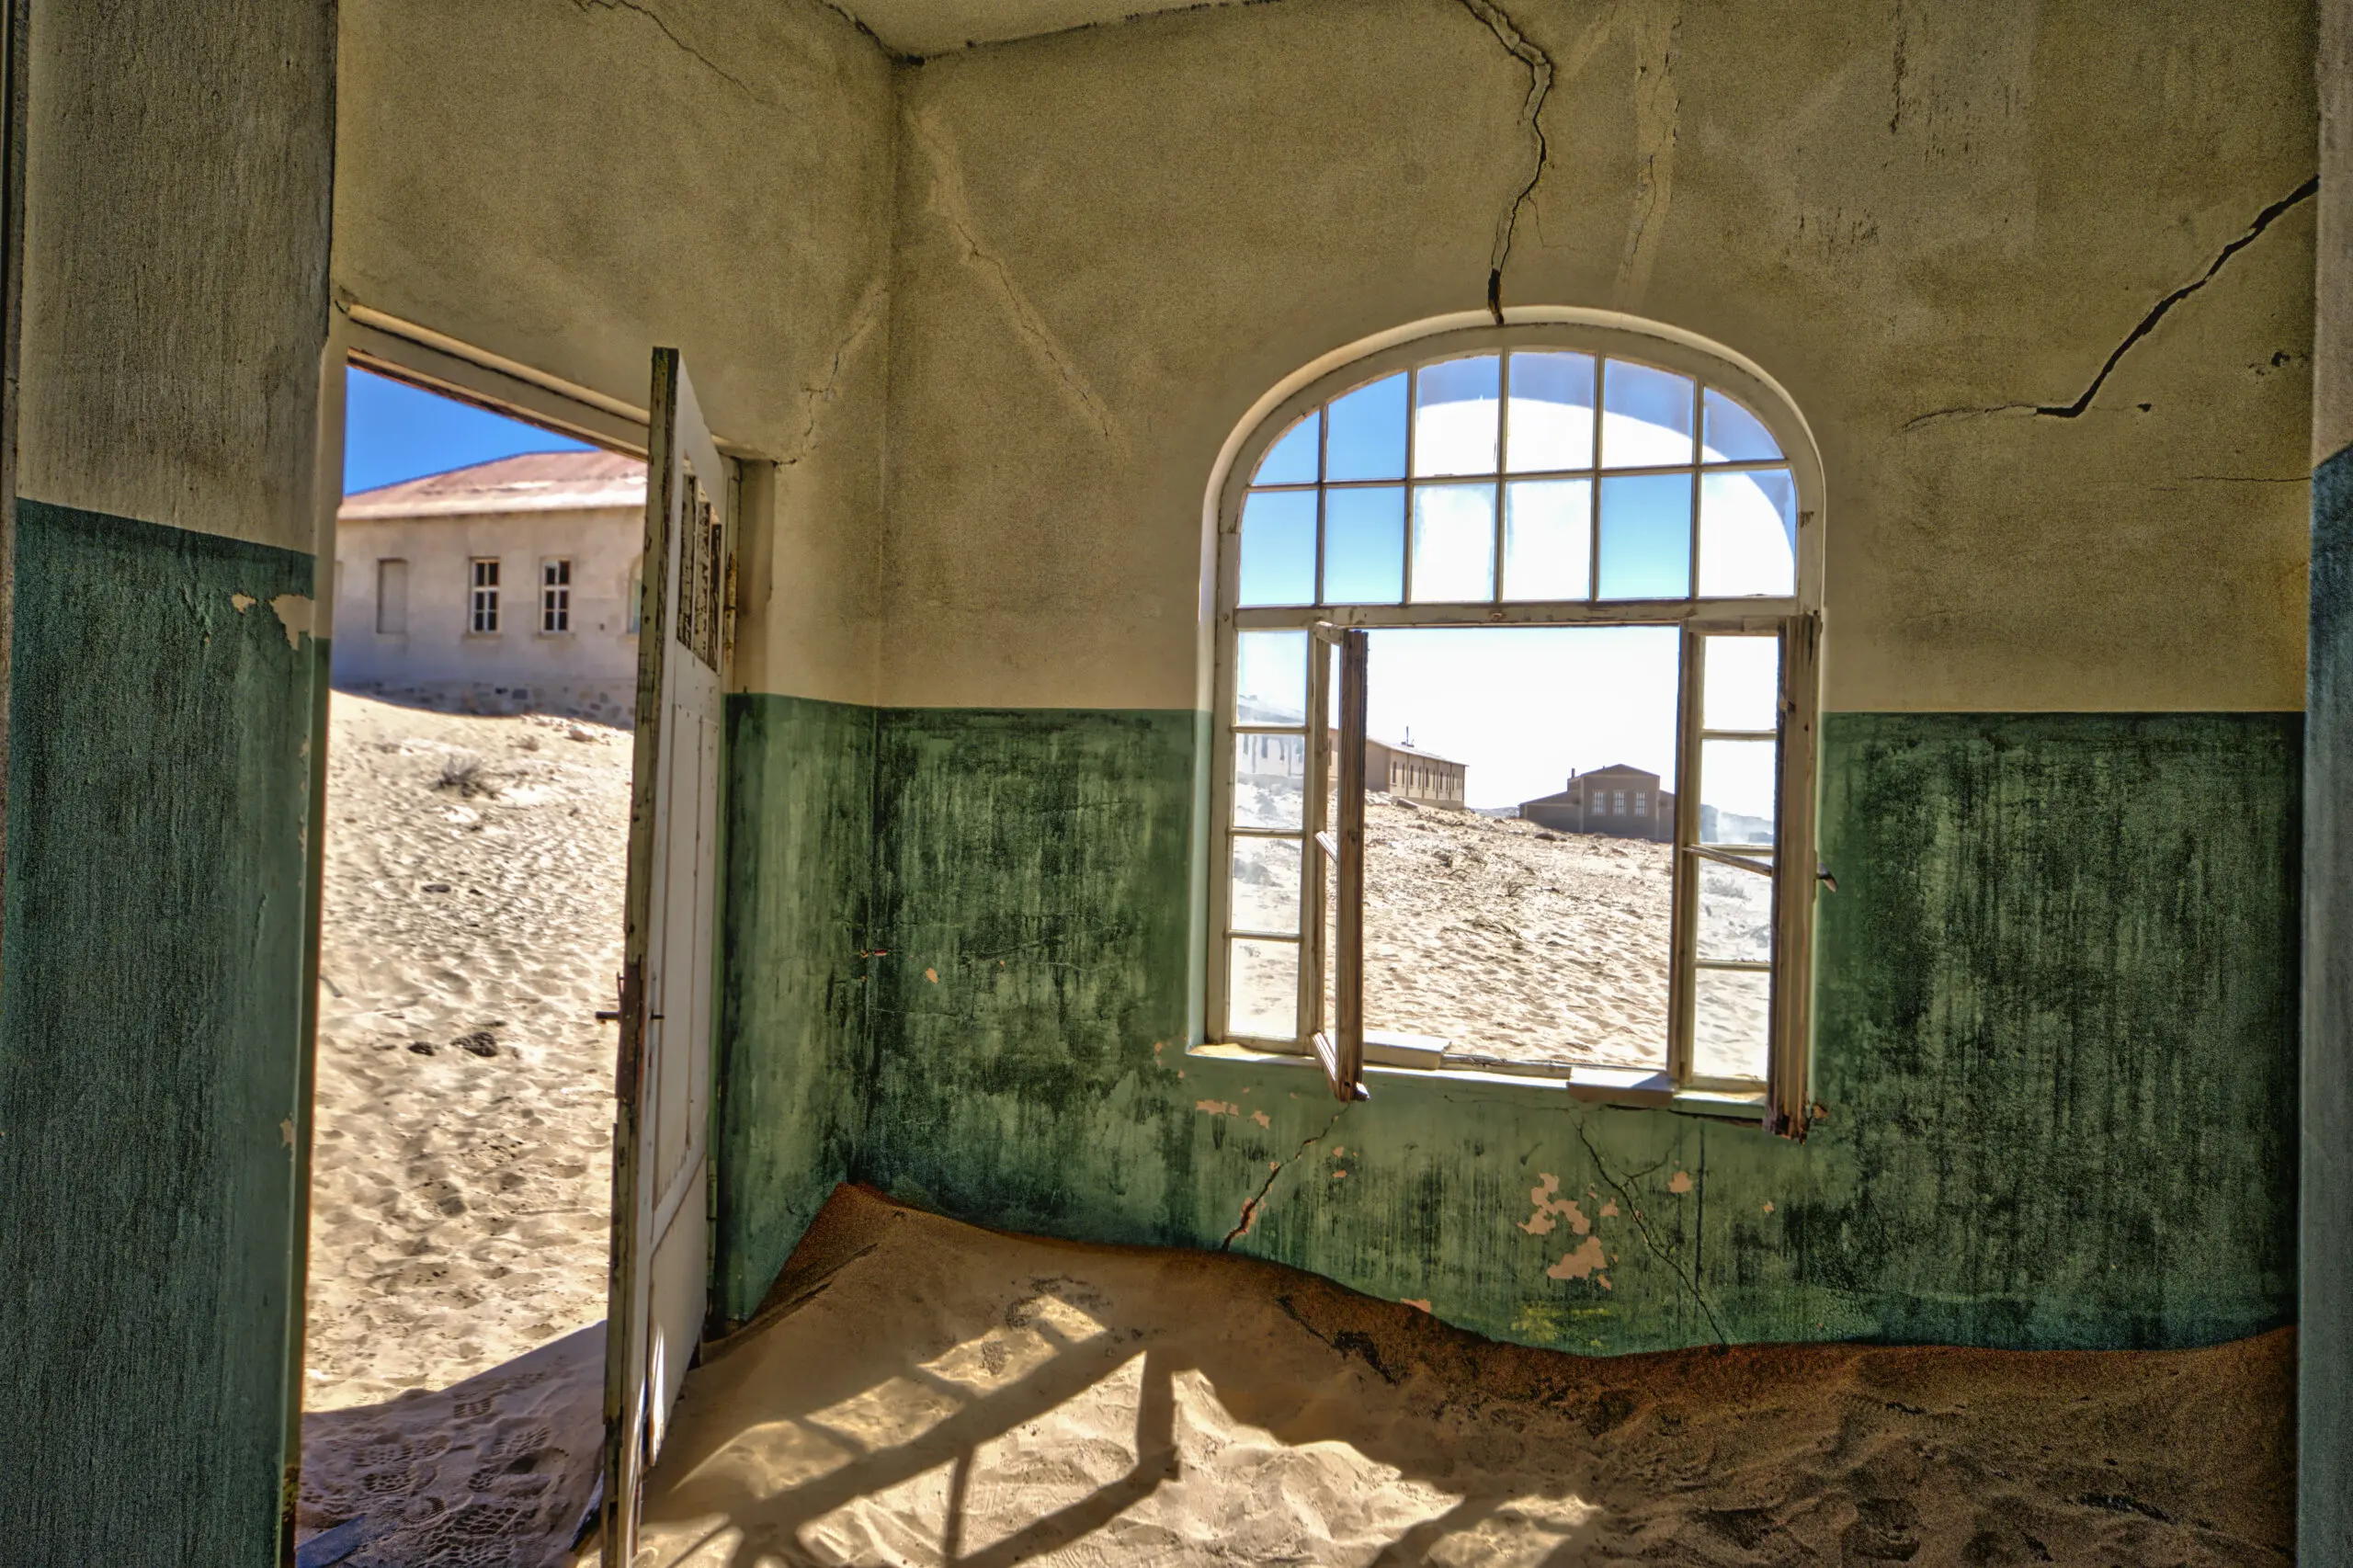 Wandbild (3841) Ghosttown Door to desert präsentiert: Details und Strukturen,Architektur,Detailaufnahmen,Häuser,Sonstige Architektur,Sehenswürdigkeiten,Architekturdetails